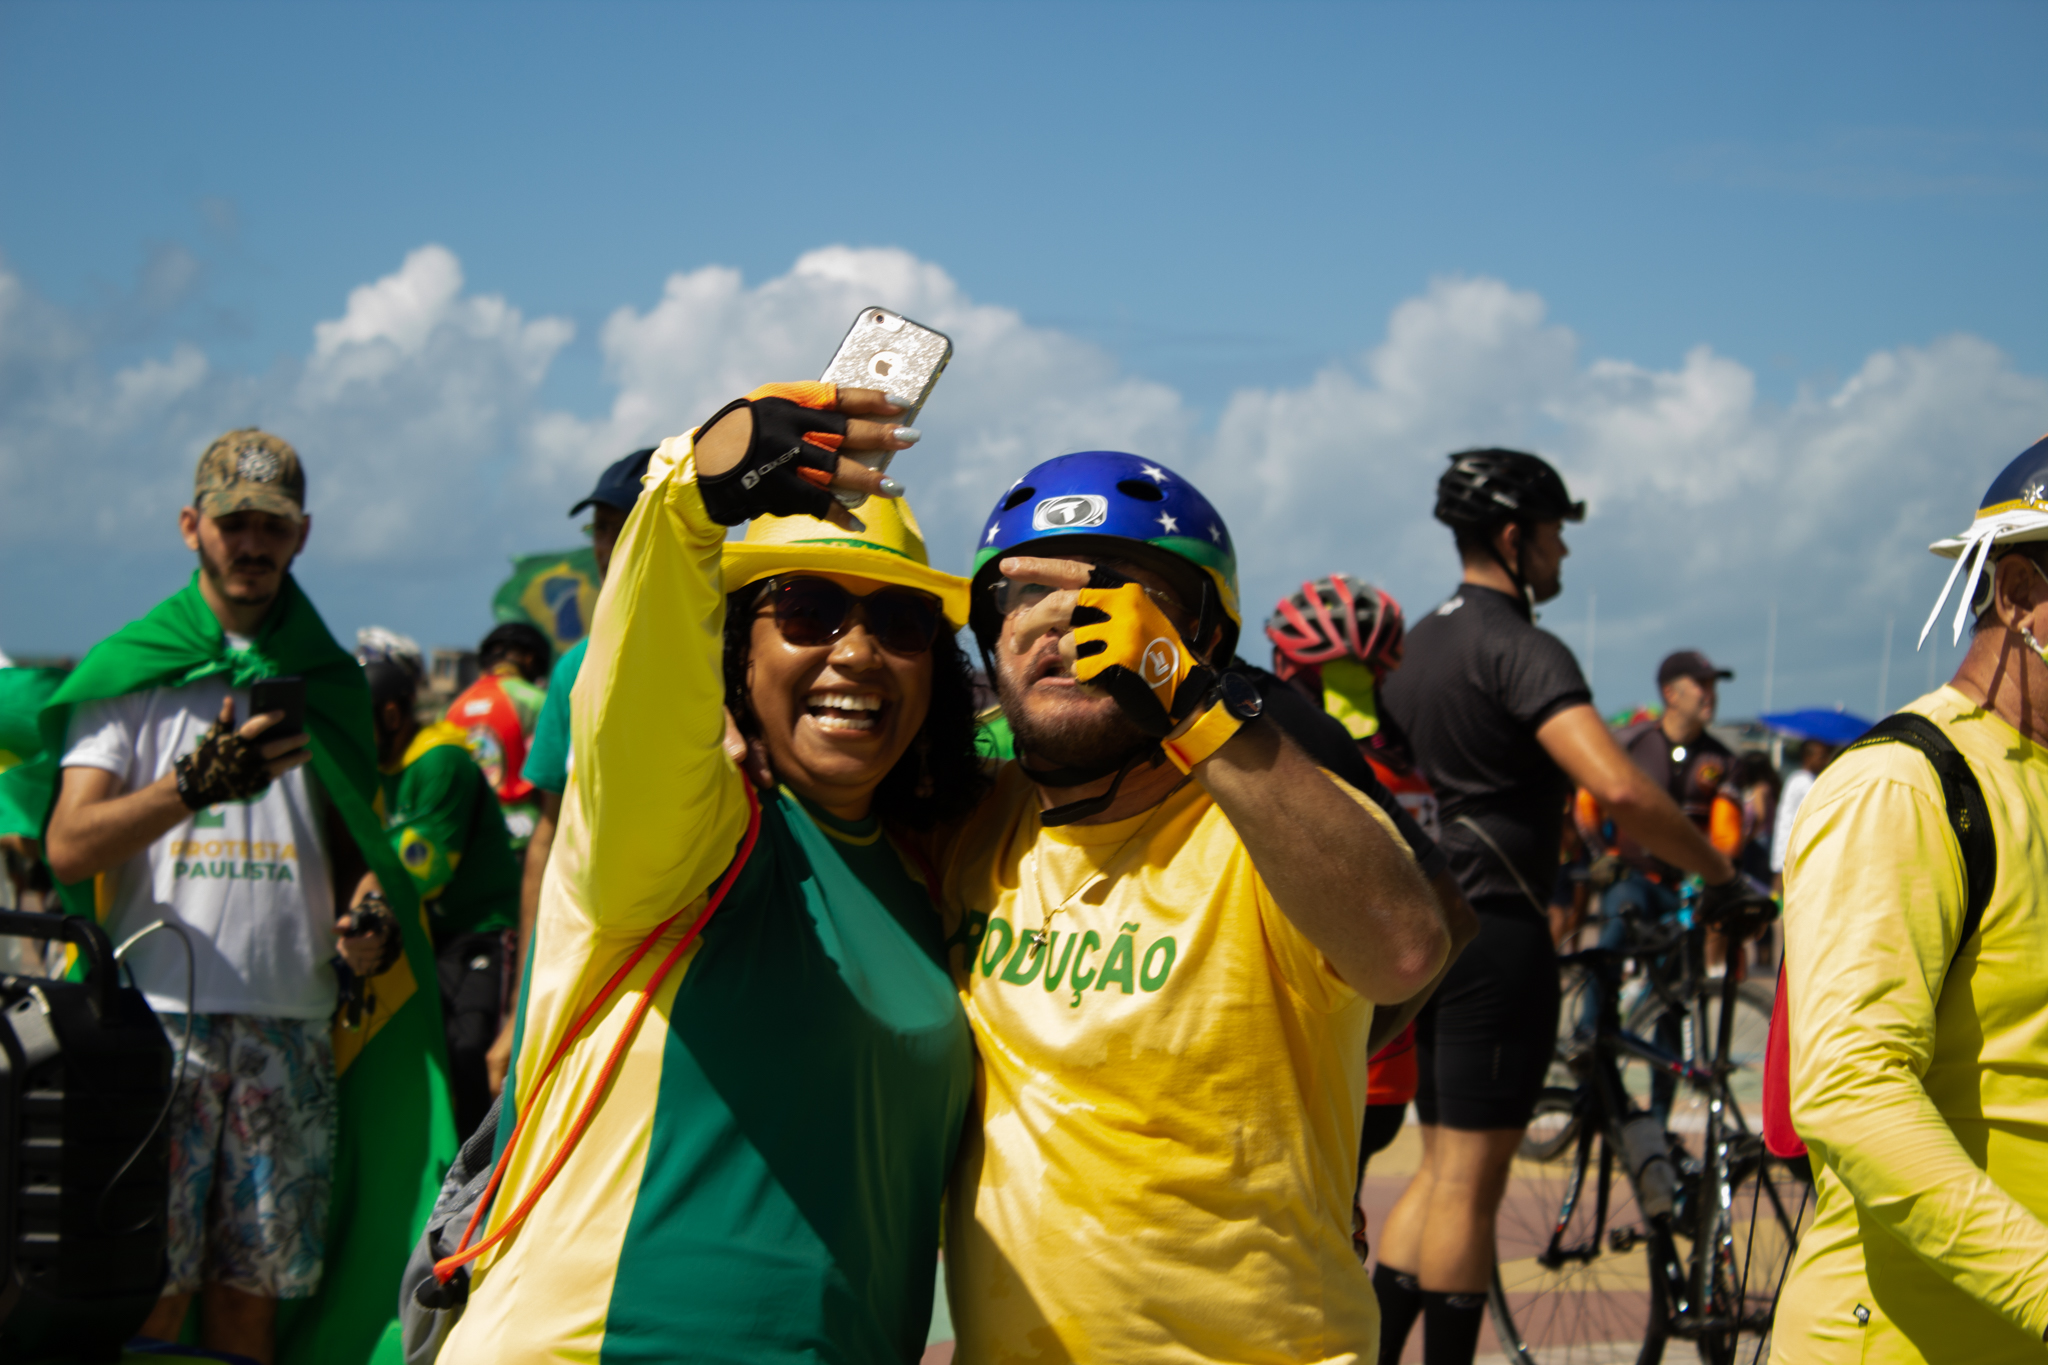 Veja fotos e vídeos da ‘bicicletada' pelo voto impresso auditável no Recife 11